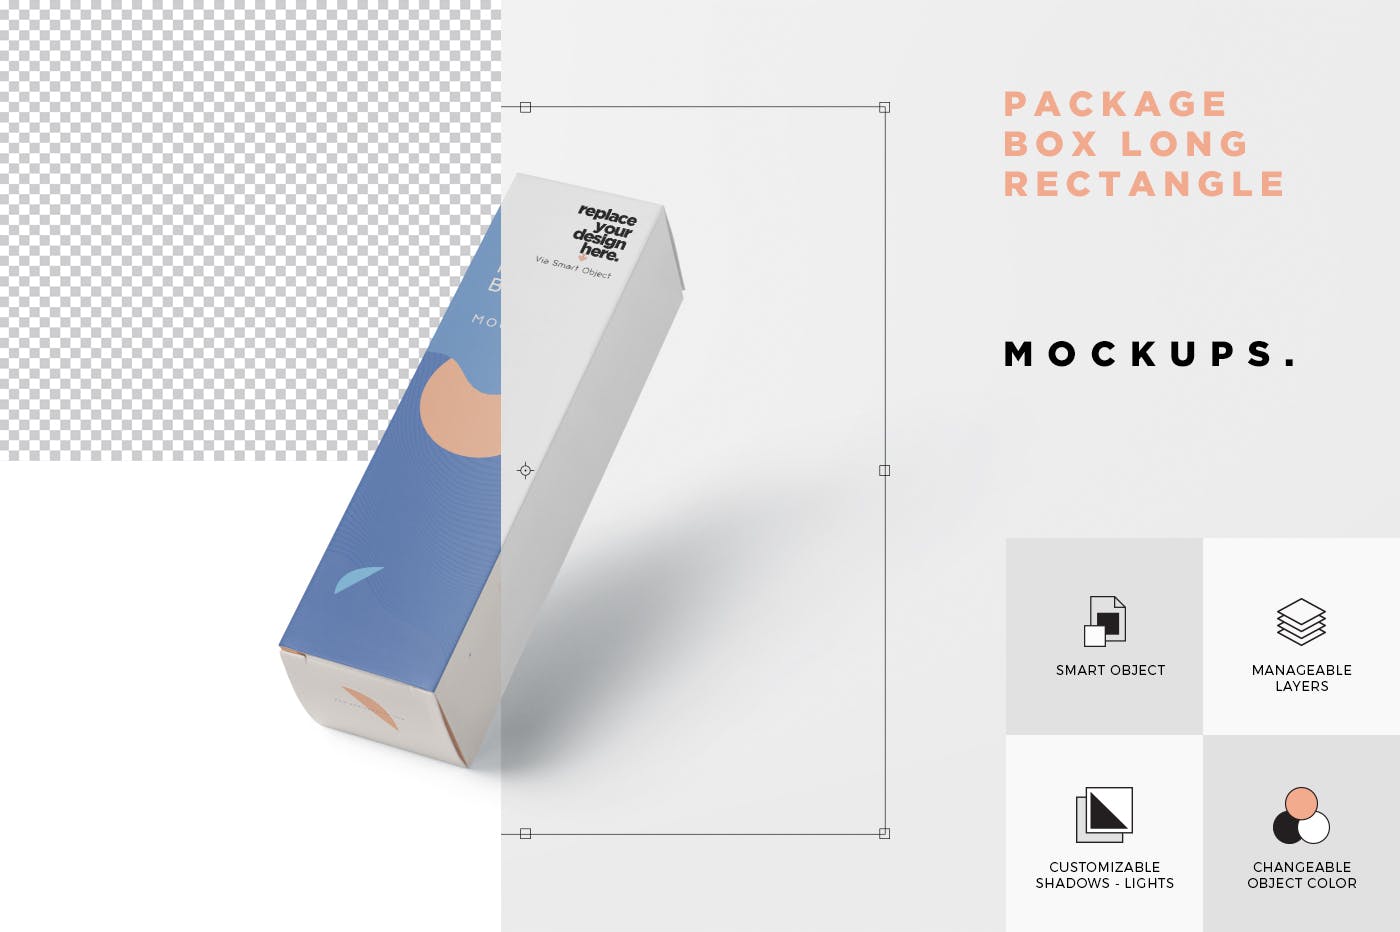 长矩形包装盒外观设计素材库精选 Package Box Mock-Up – Long Rectangle Shape插图(4)